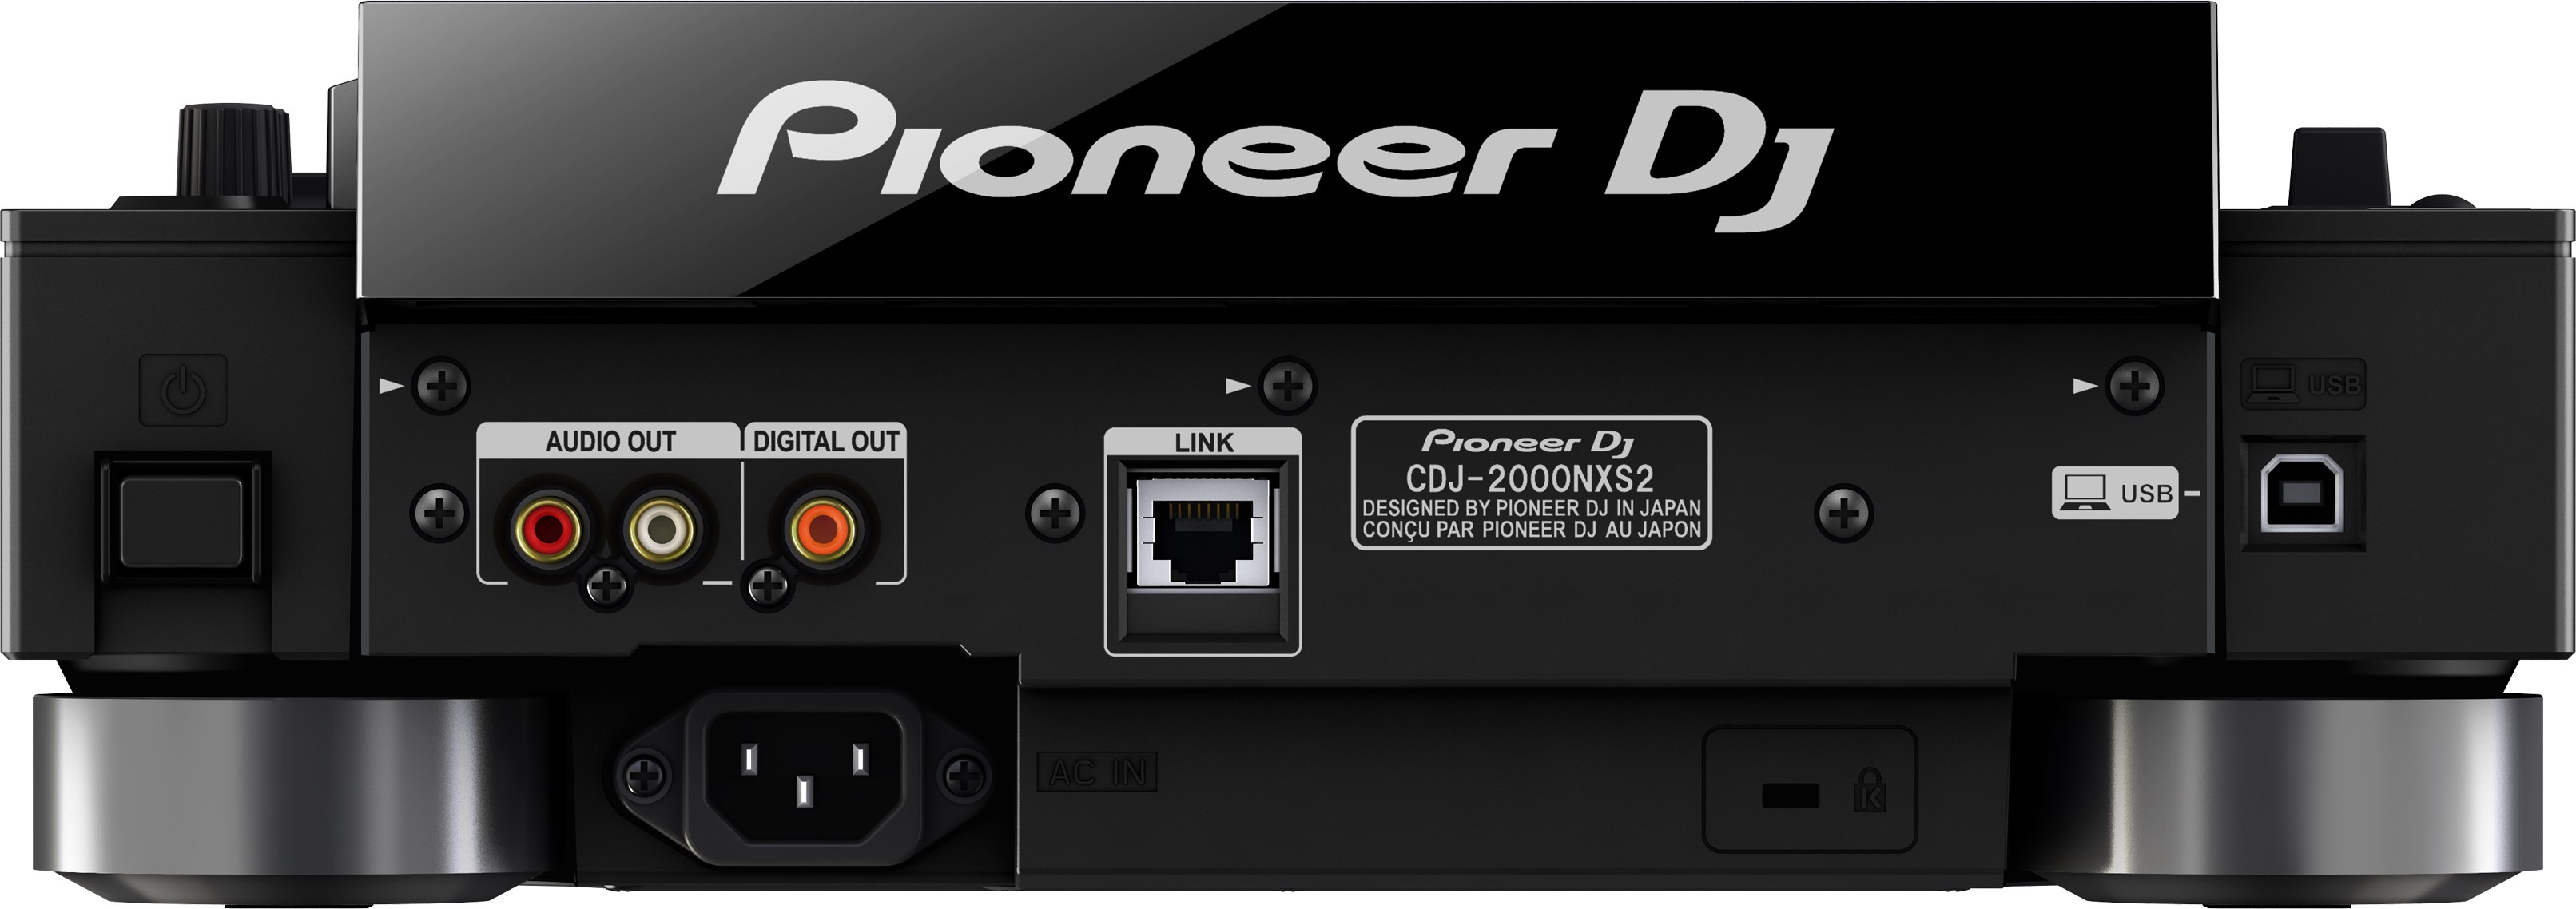 Pioneer Dj Cdj-2000nxs2 - Plato MP3 & CD - Variation 2